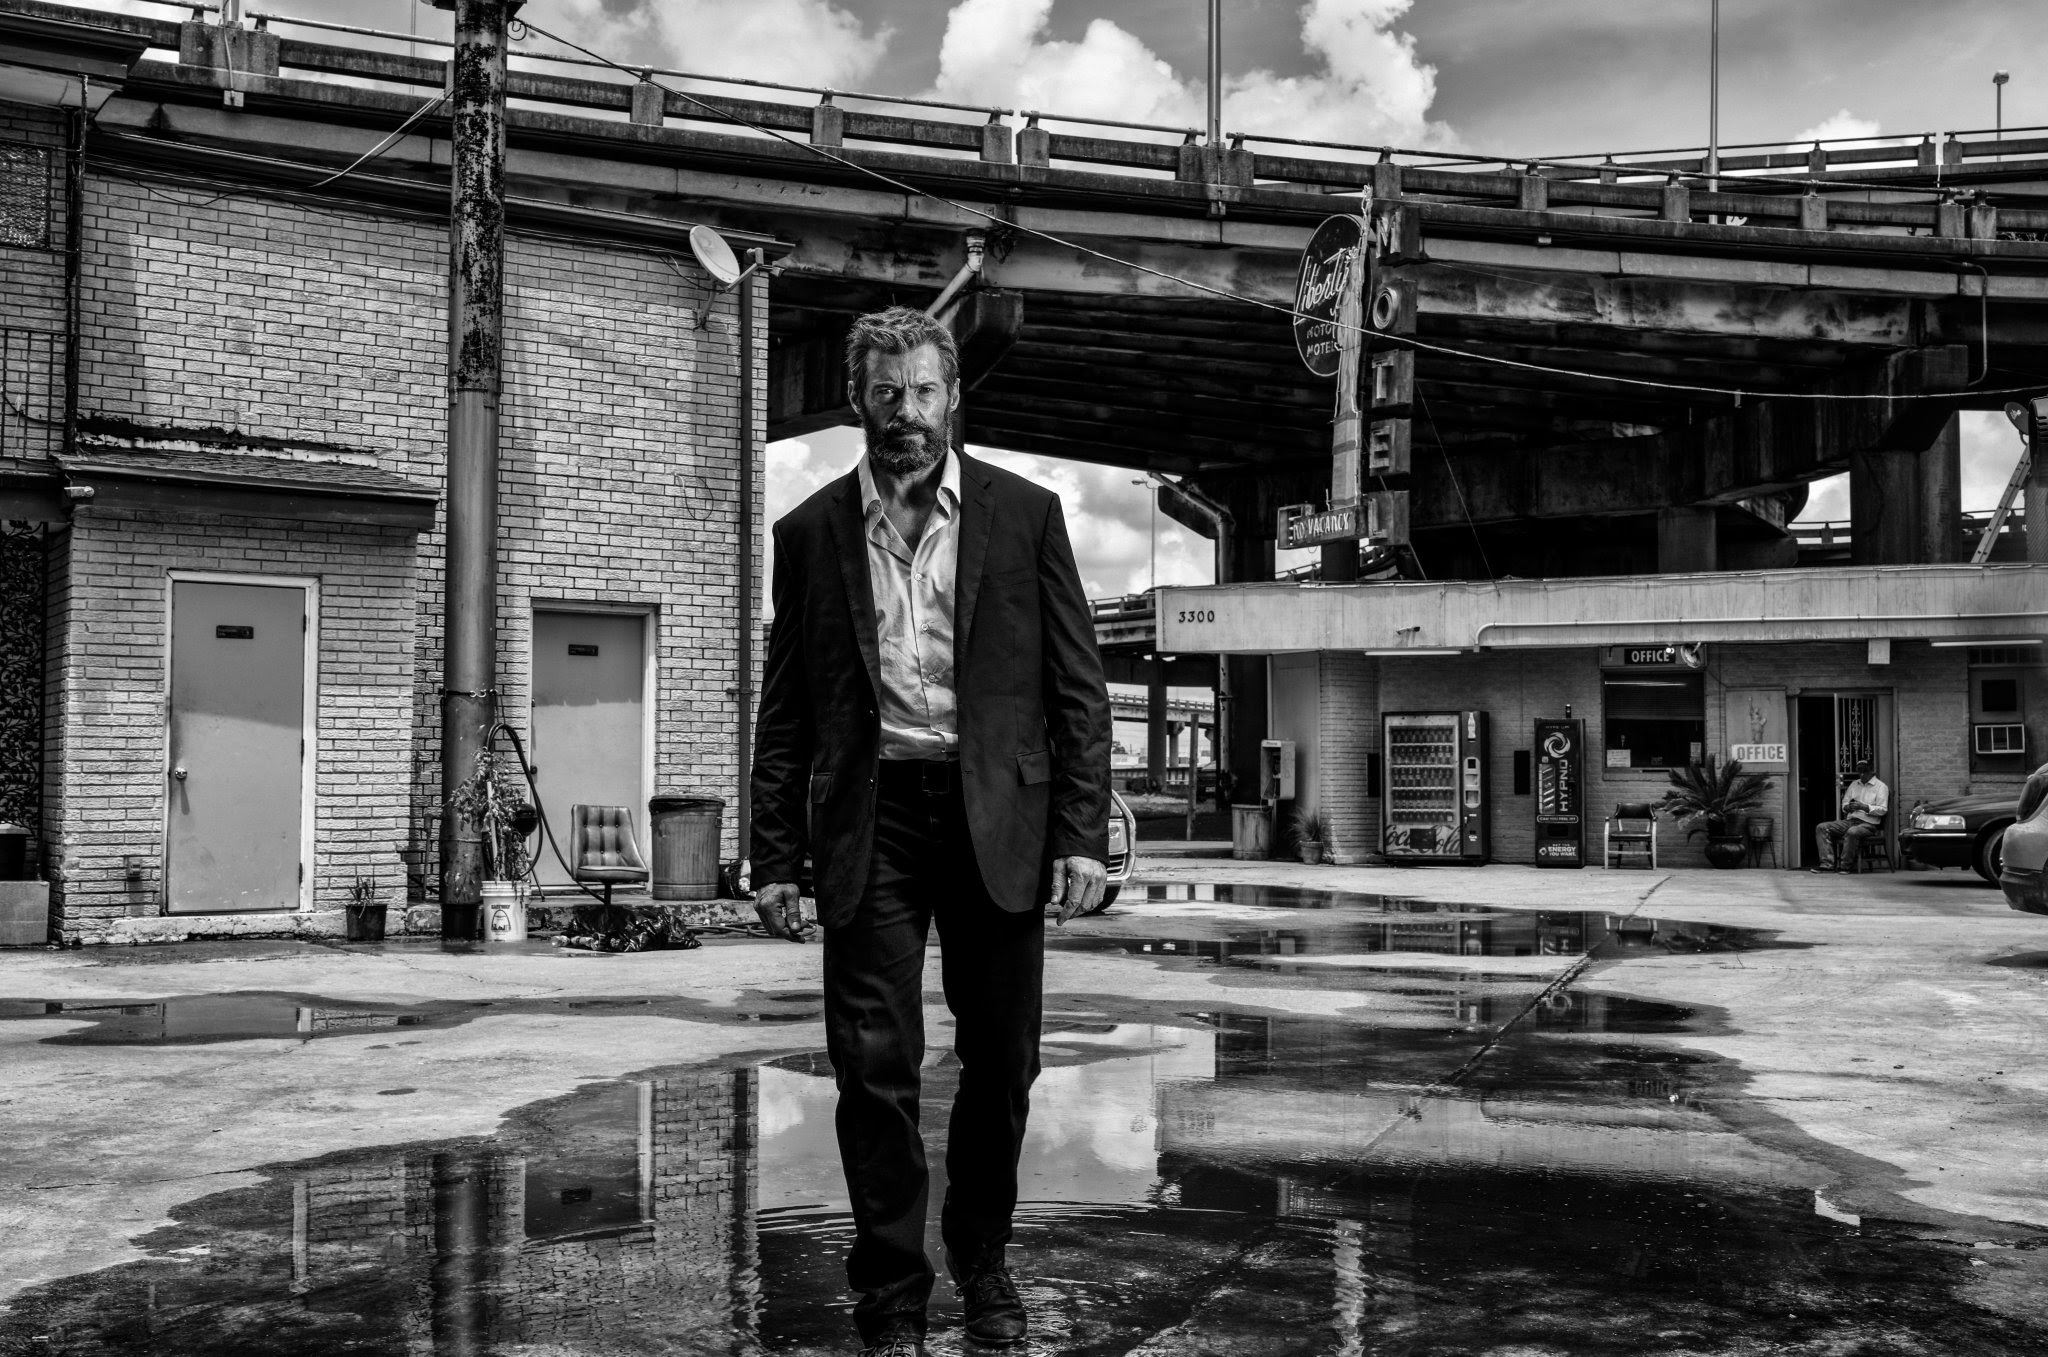 ｃｉａ こちら映画中央情報局です Logan ヒュー ジャックマン主演の X Men のスピンオフ ローガン が 運転手のジェームズ ハウレットとして働くウルヴァリンの現実を紹介した人生の悲哀の本編シーンをリリース